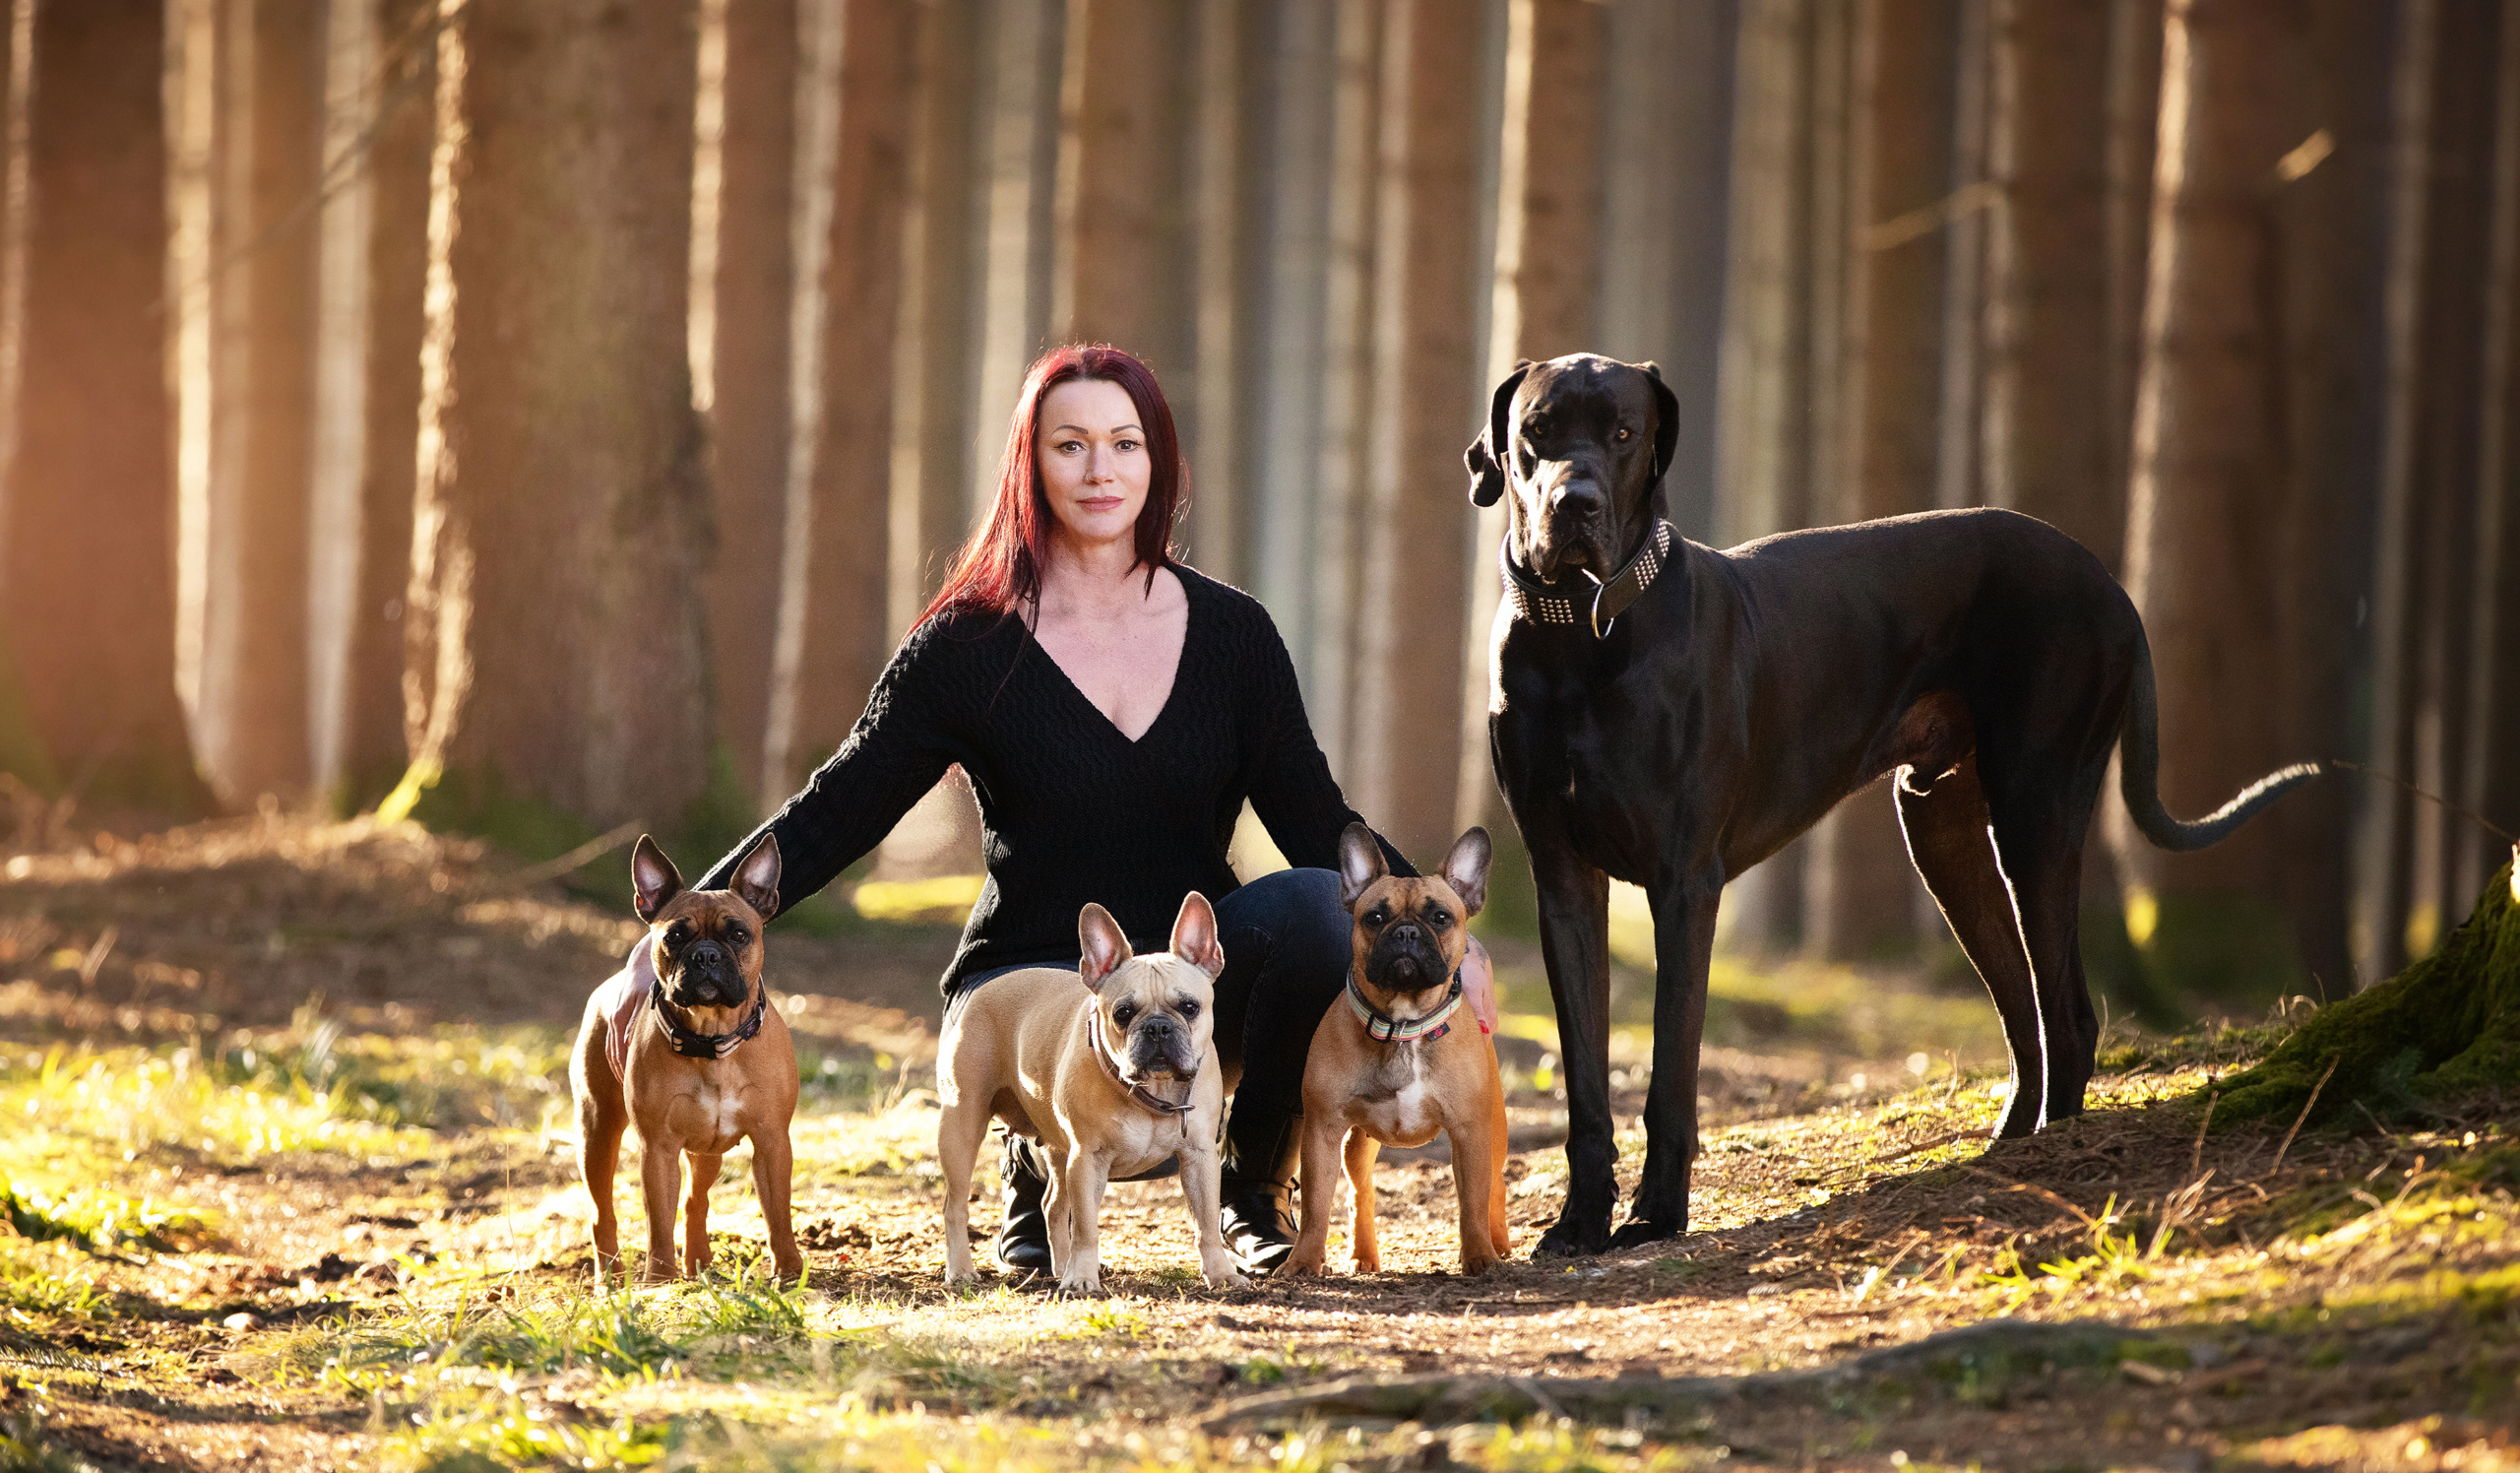 Barbara Elmer mit ihrer Dogge und ihren drei französischen Bulldoggen im Wald, Barbara sitzt in der Hocke, die Hunde stehen unangeleint neben ihr und schauen in die Kamera.